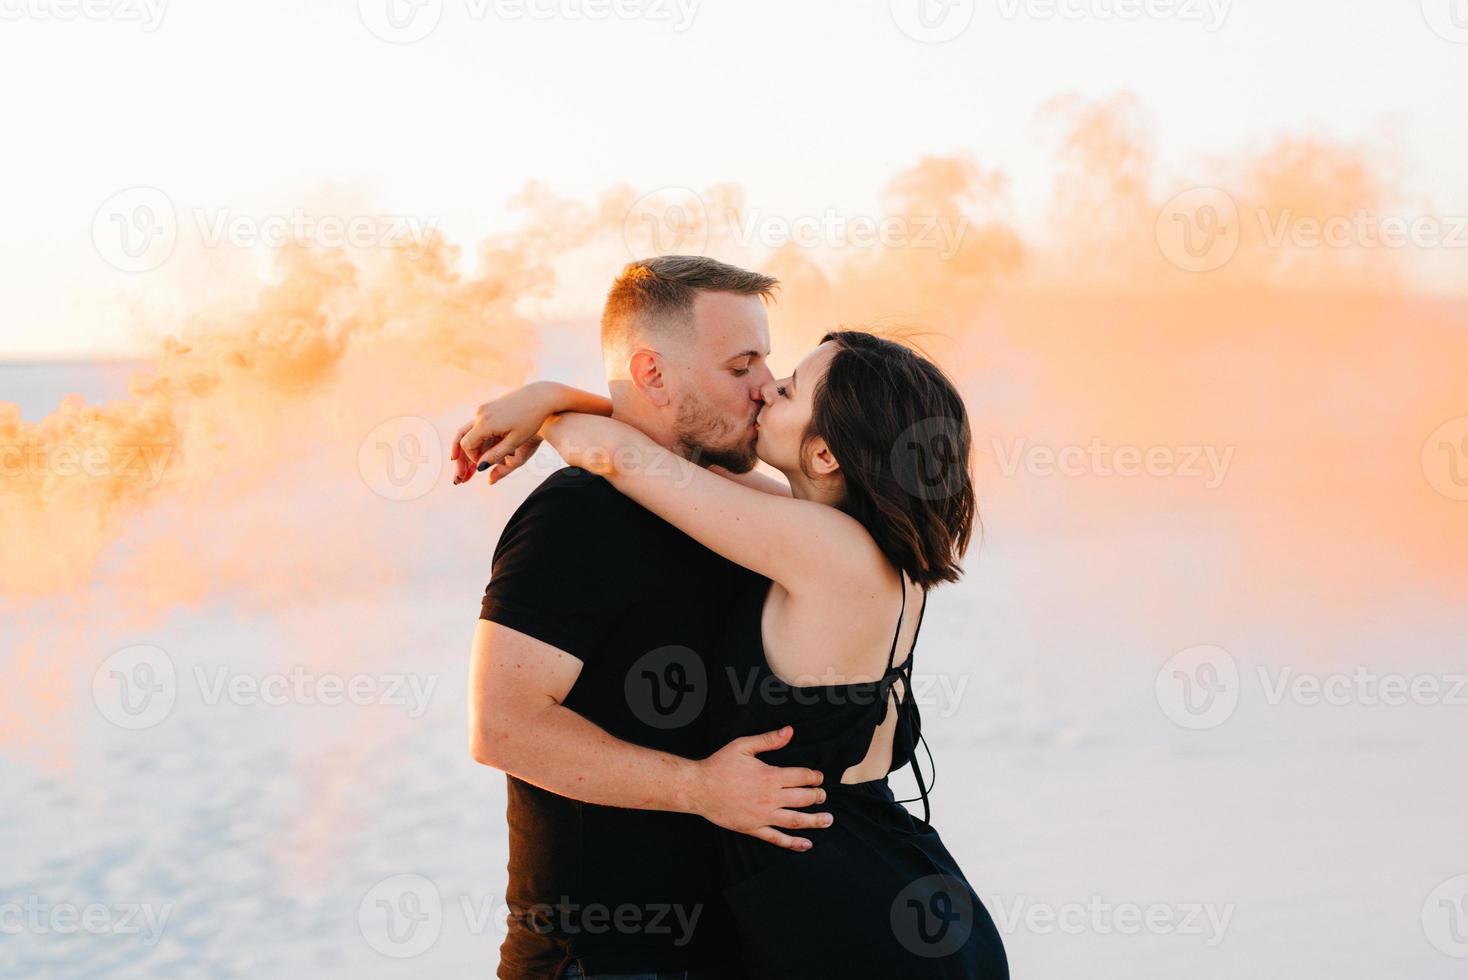 chico y una chica vestidos de negro se abrazan y corren sobre la arena blanca foto